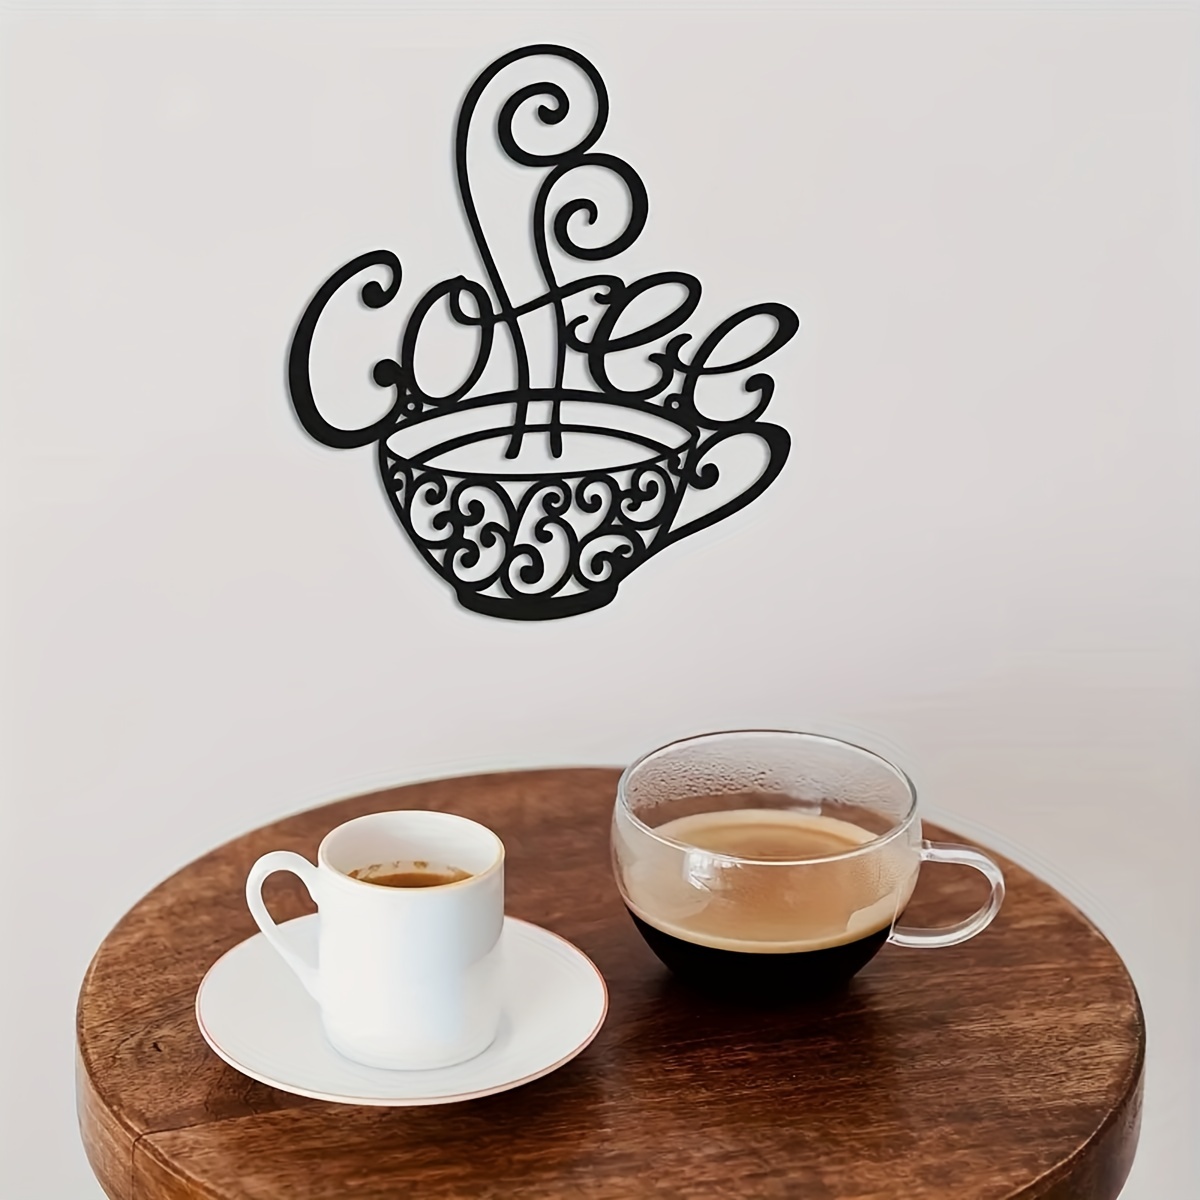 Café y té, Hogar